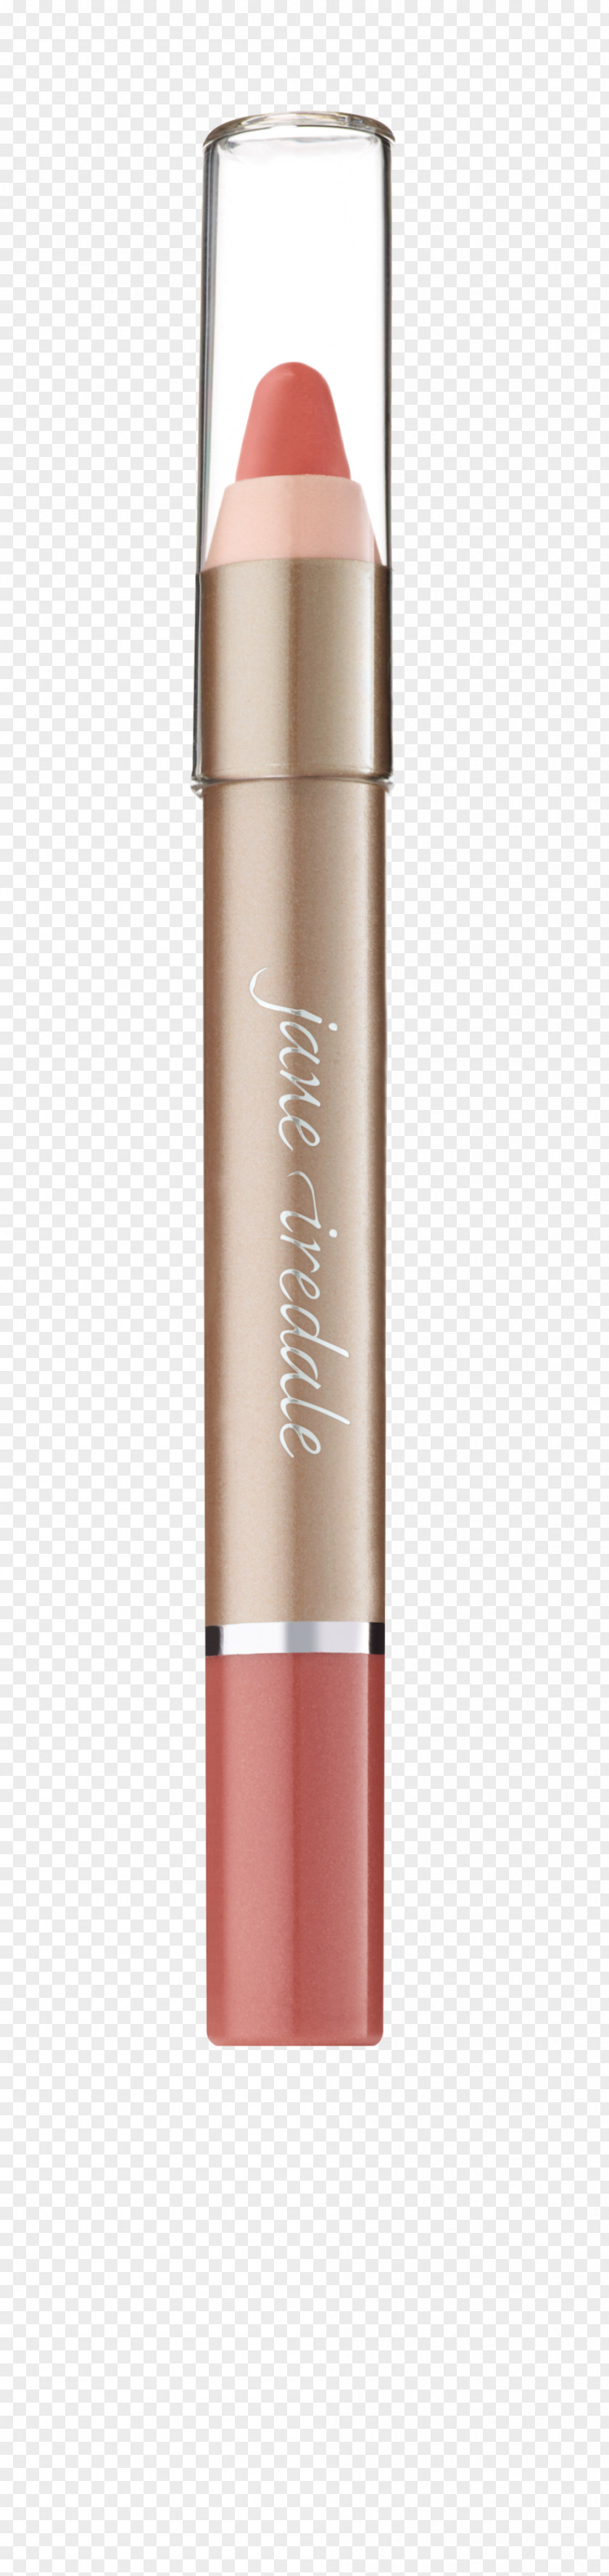 Makeup Pen Cosmetics Lipstick Lip Gloss Crayon PNG